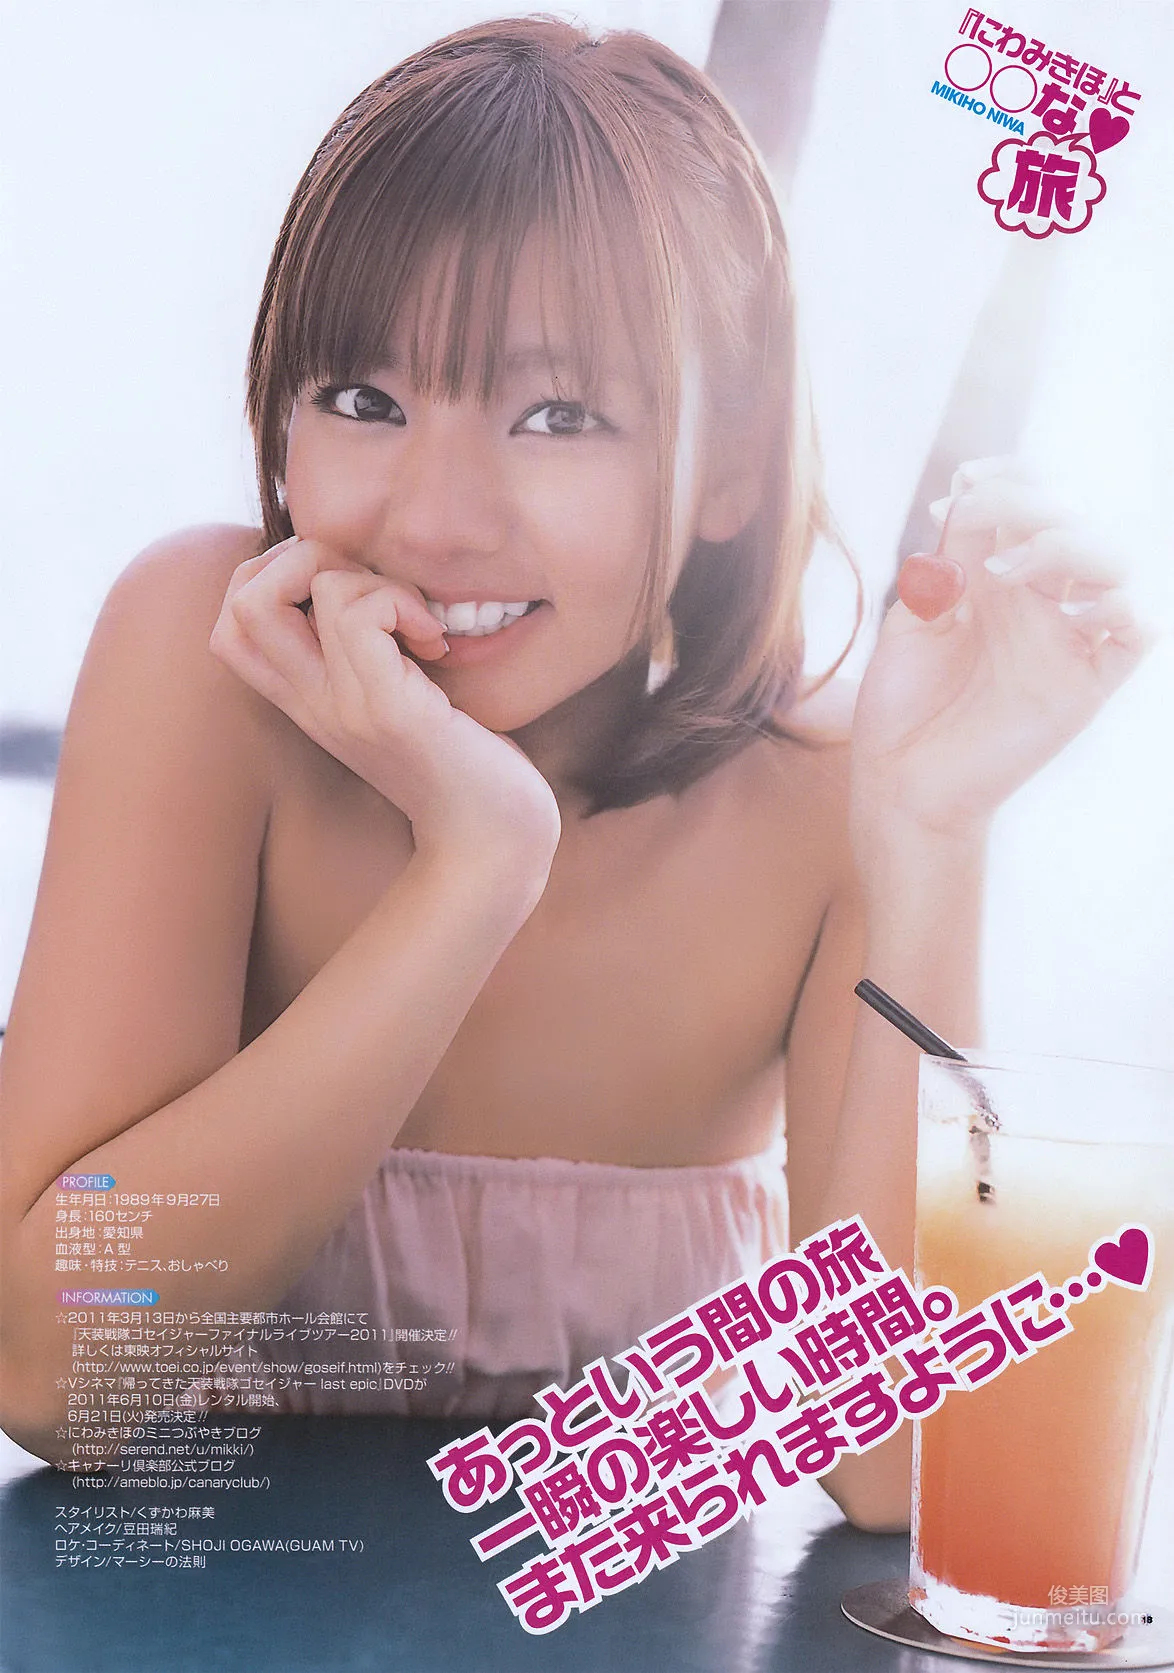 [Young Gangan] にわみきほ Mikiho Niwa 2011年No.06 写真杂志9